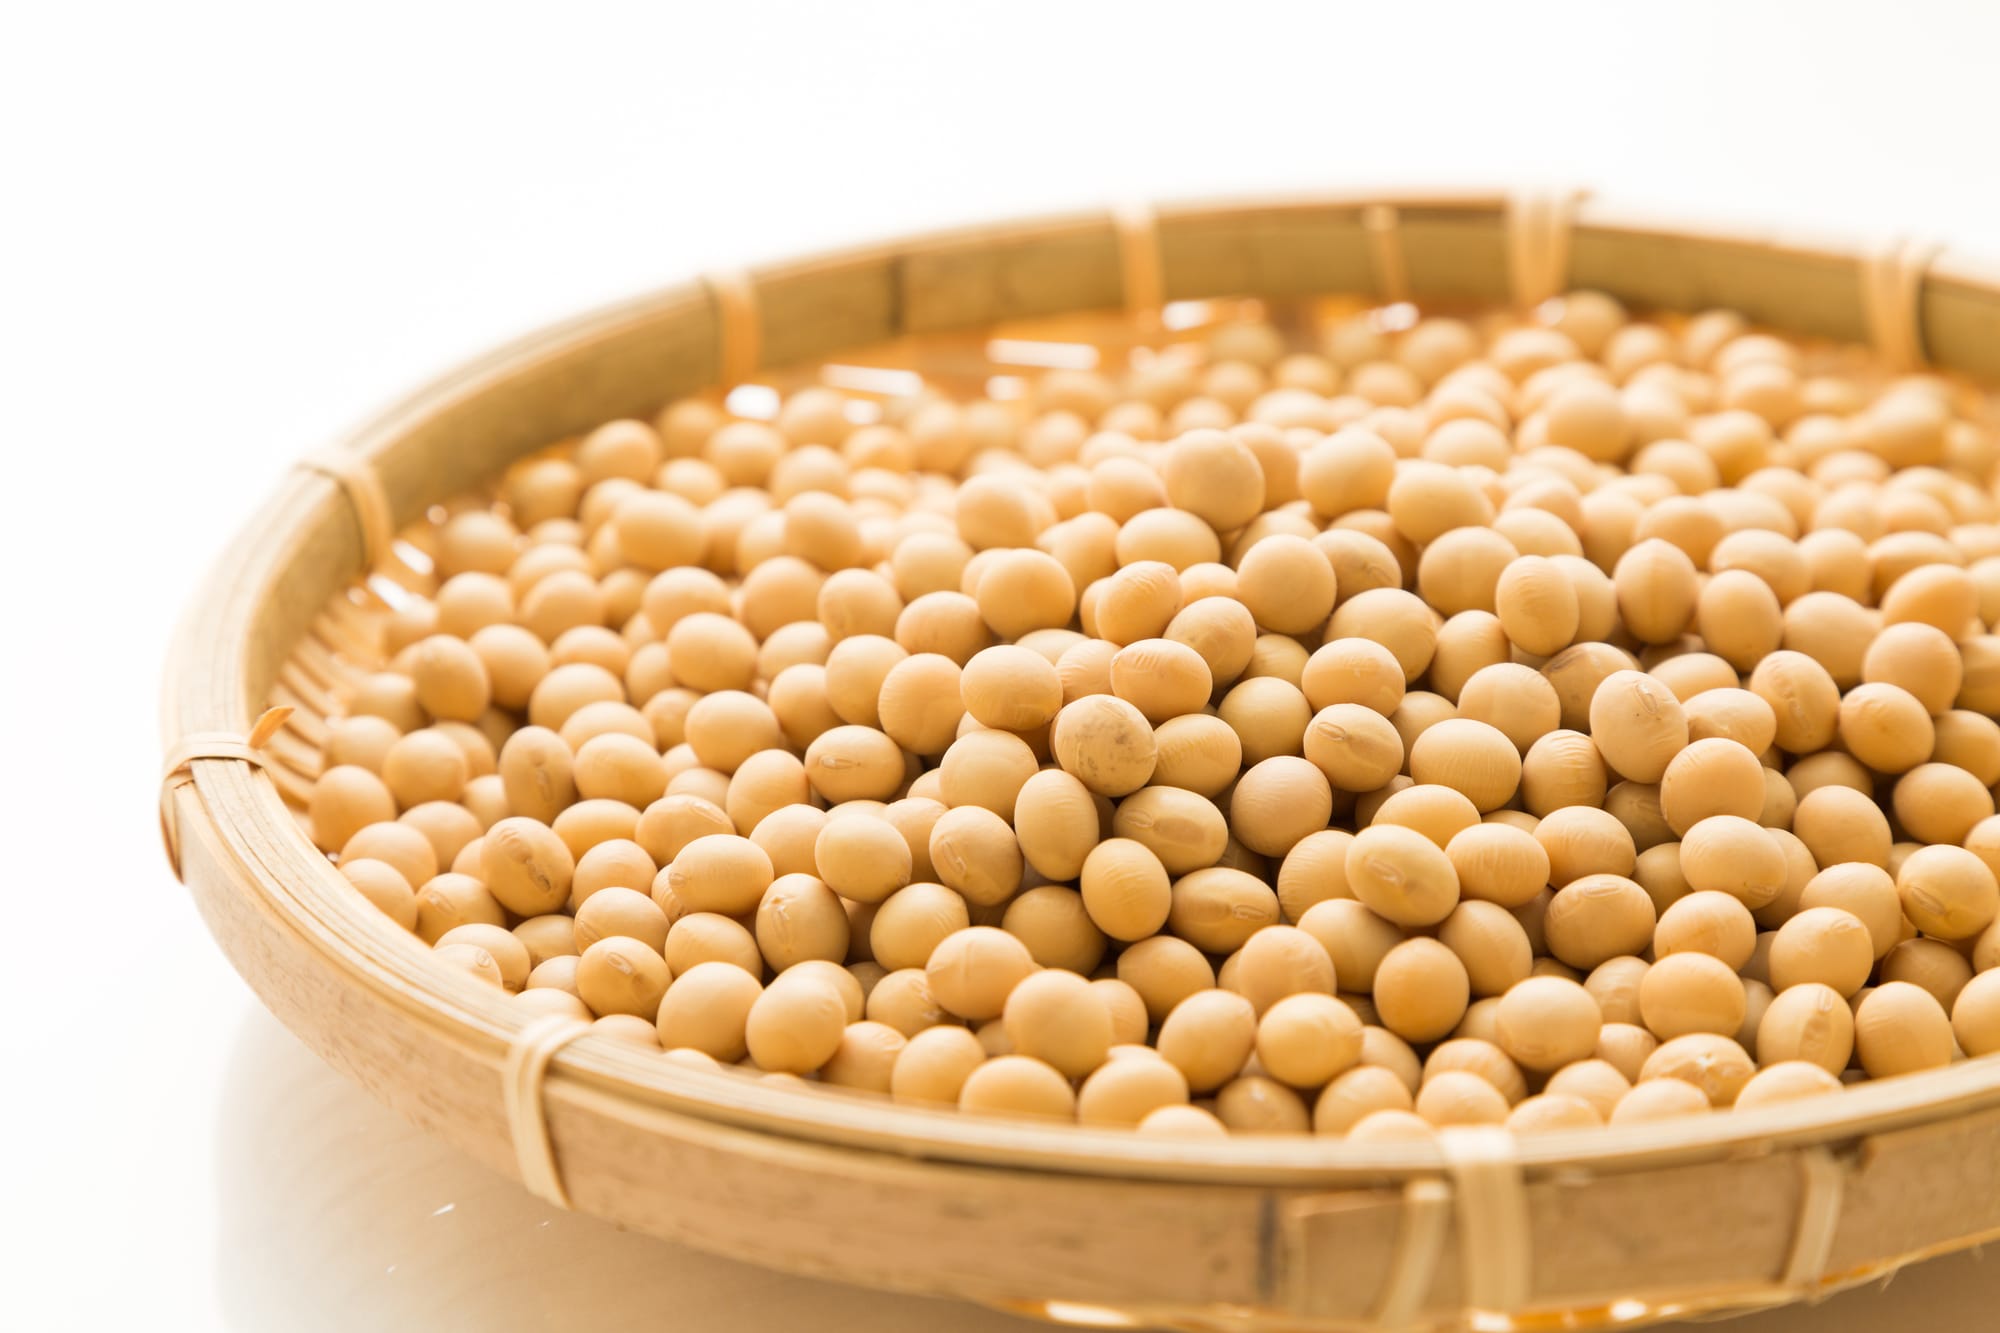 「大豆」の生産量が多い国ランキング